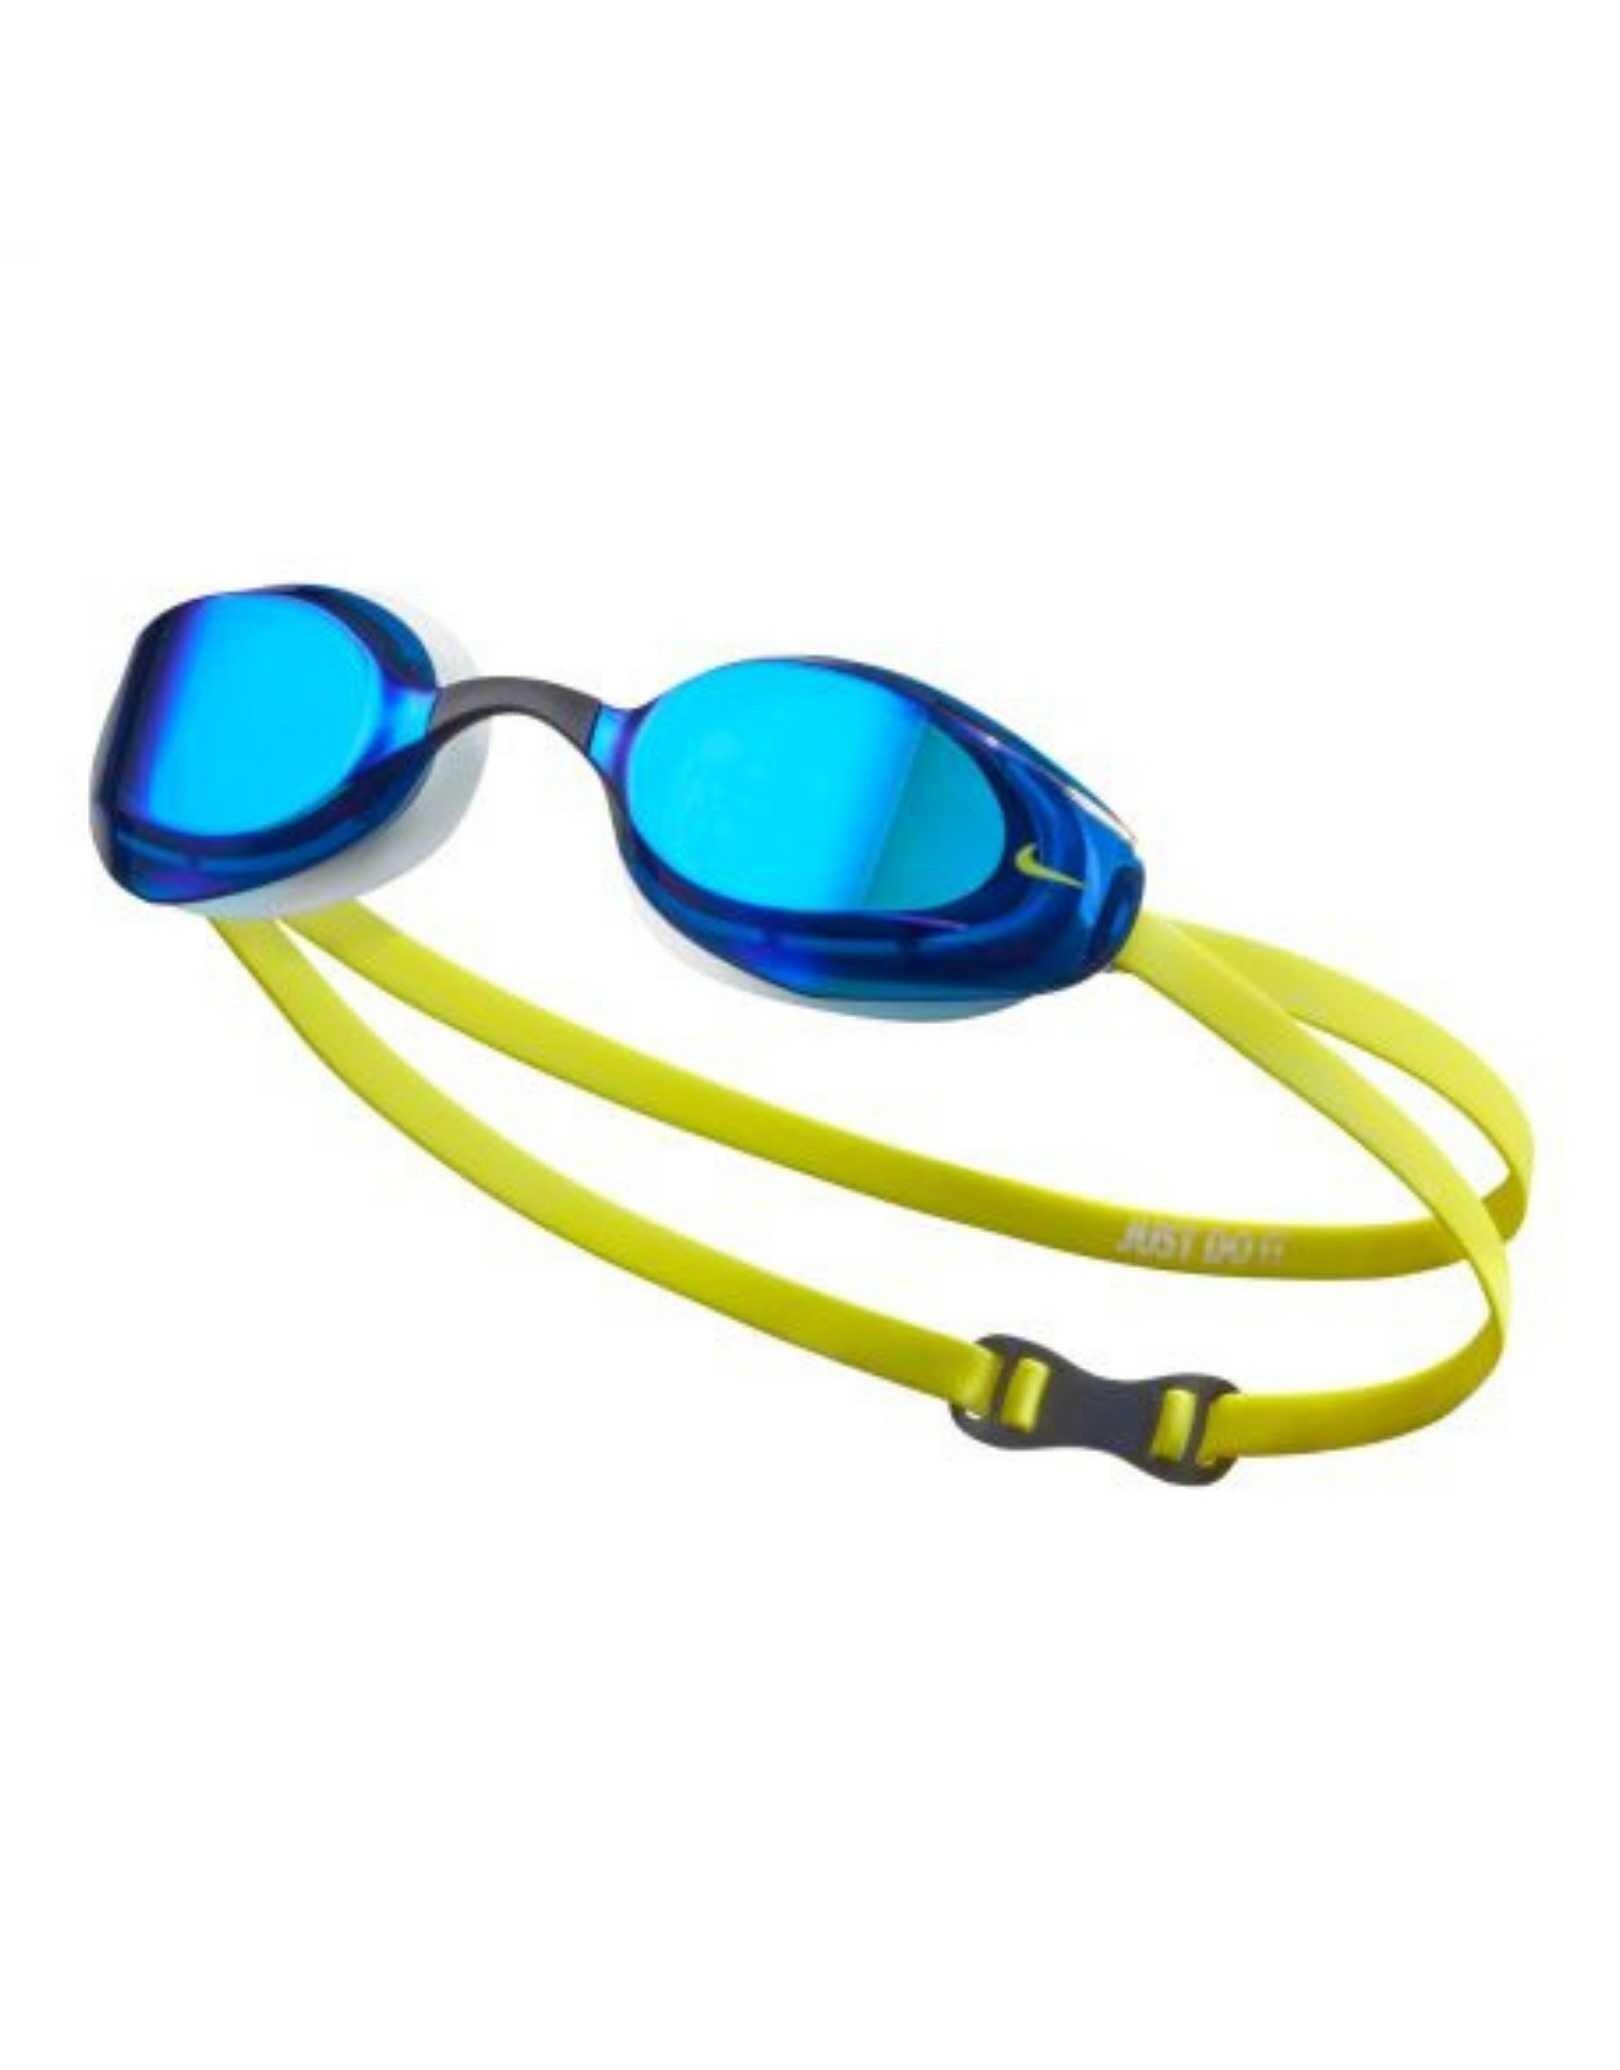 Swim vapor mirror goggle men's swimming swimming goggle 4/5